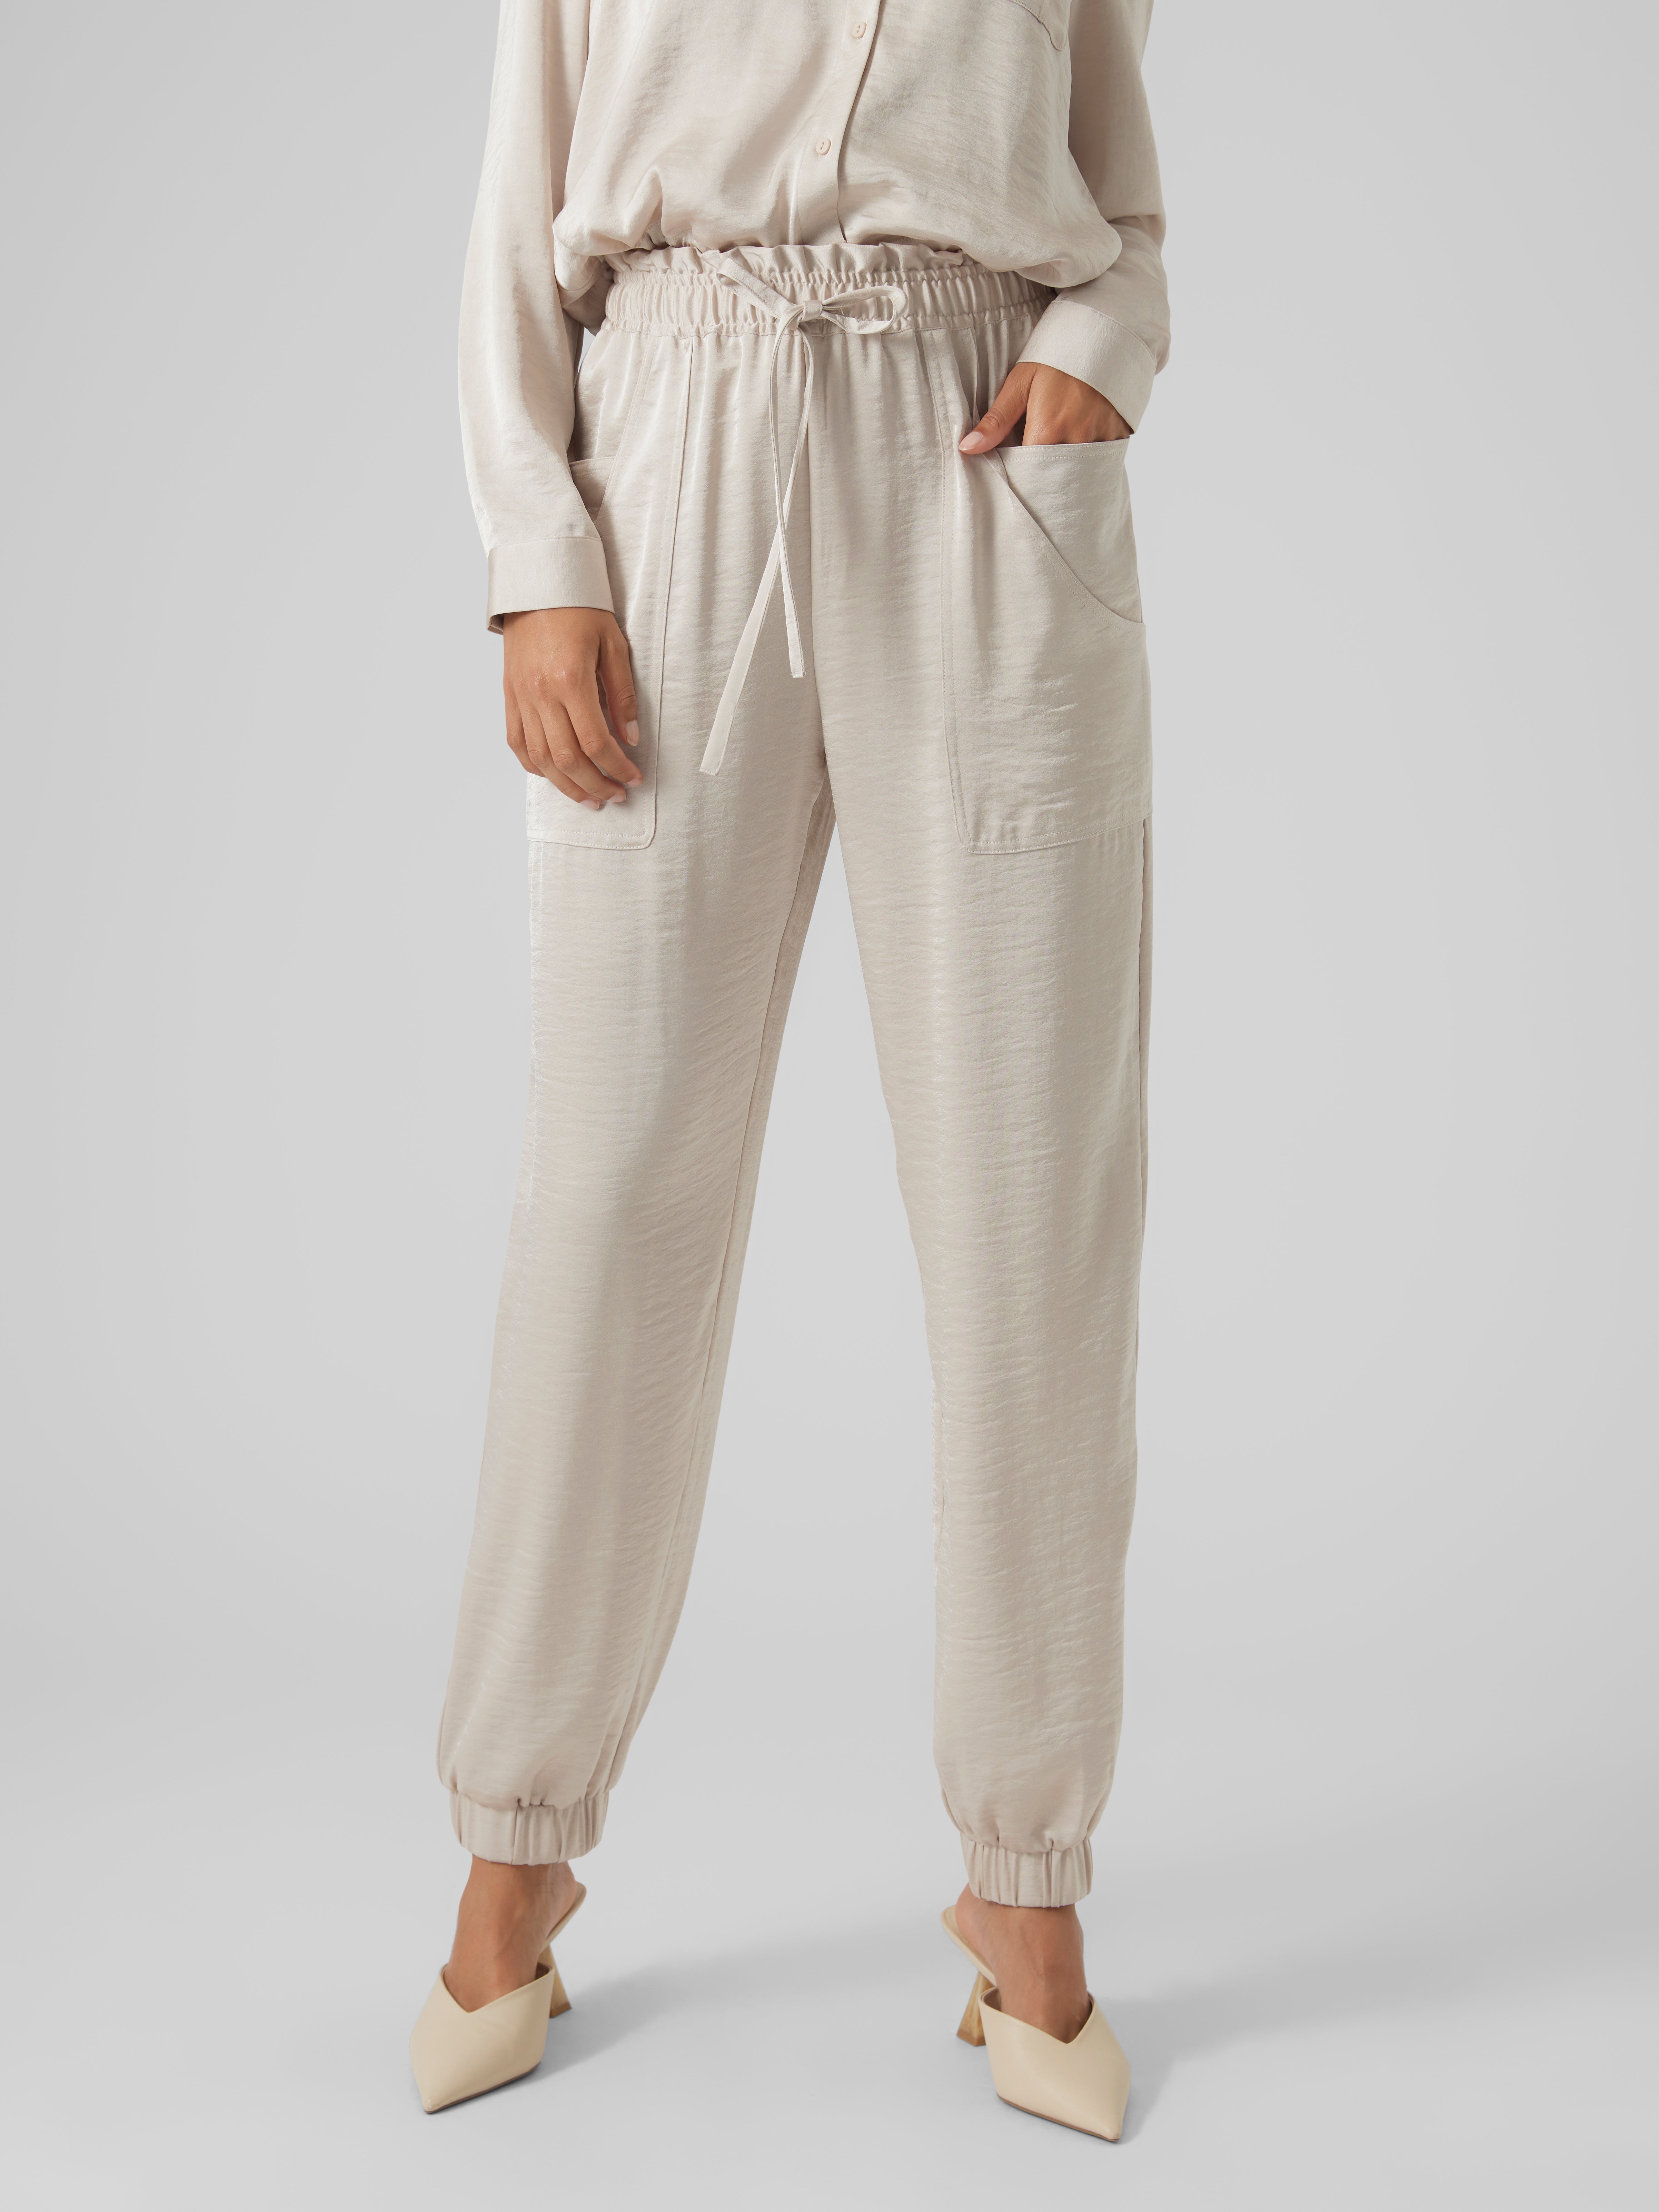 Alto Moda By Pantaloons Men's Formal Wear Trousers  205000004725475_Khaki_7XL : Amazon.in: Fashion